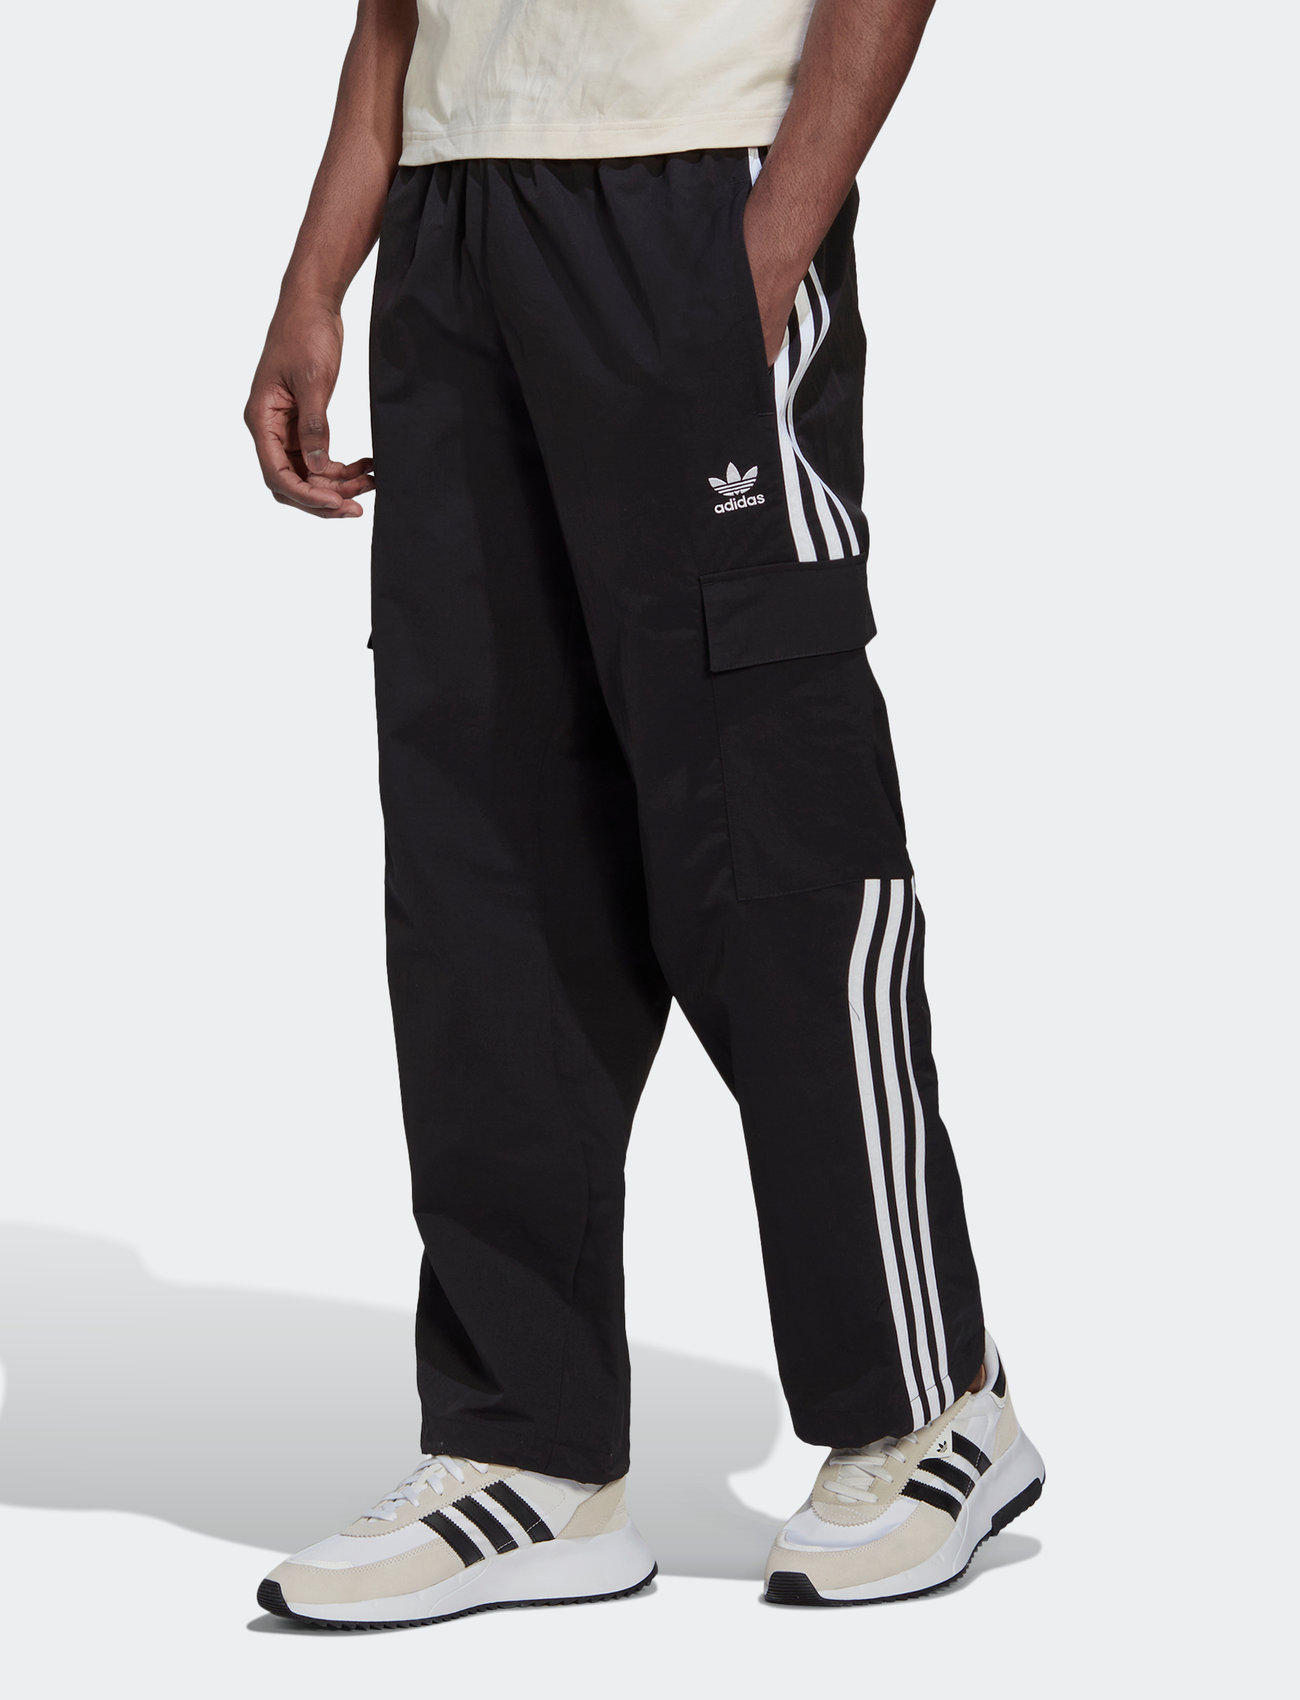 adidas Originals 3-stripes Bottoms - Casual trousers Boozt.com